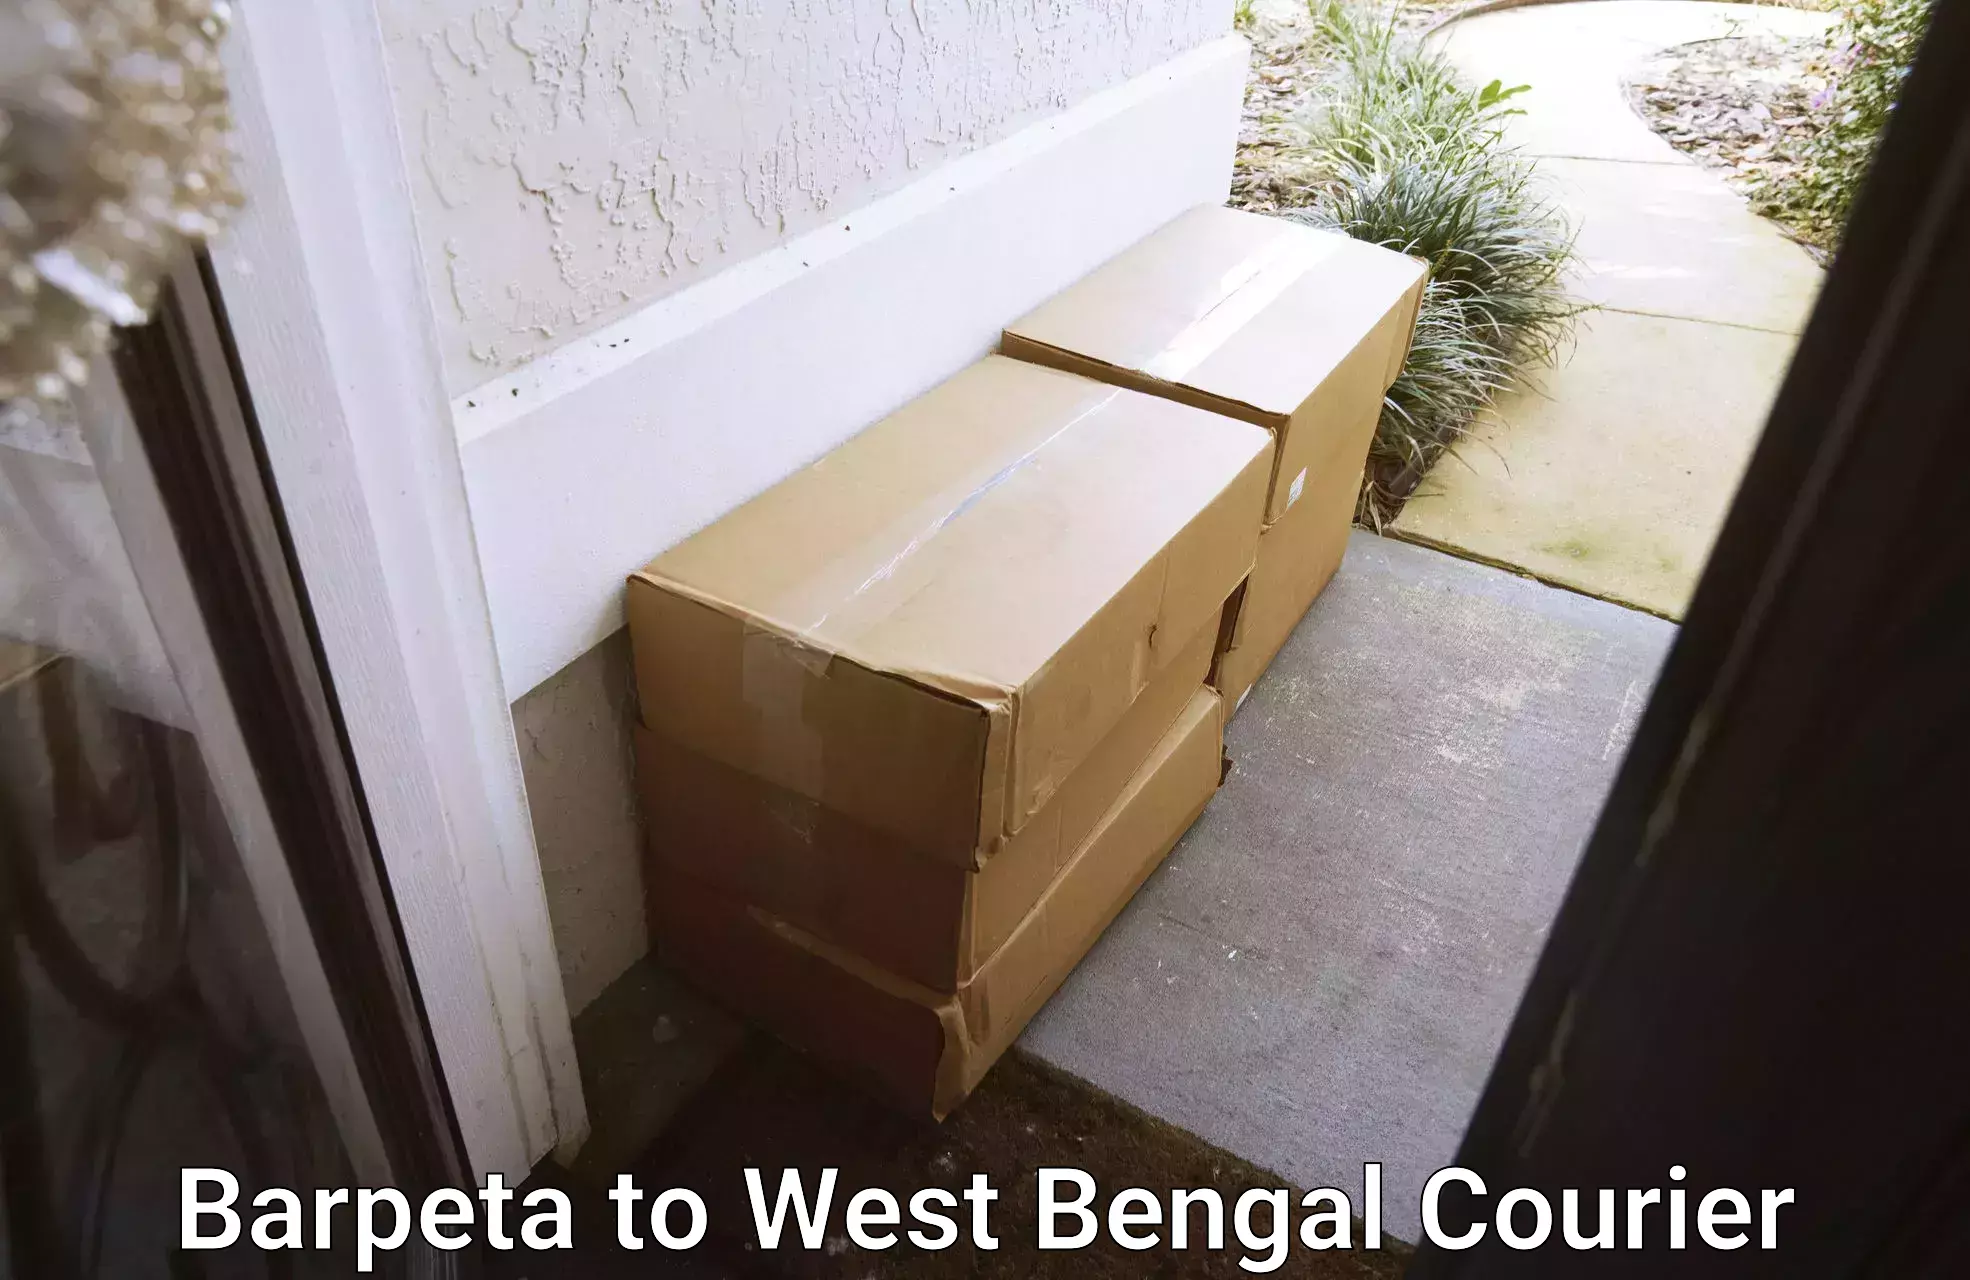 Heavy parcel delivery Barpeta to Manteswar